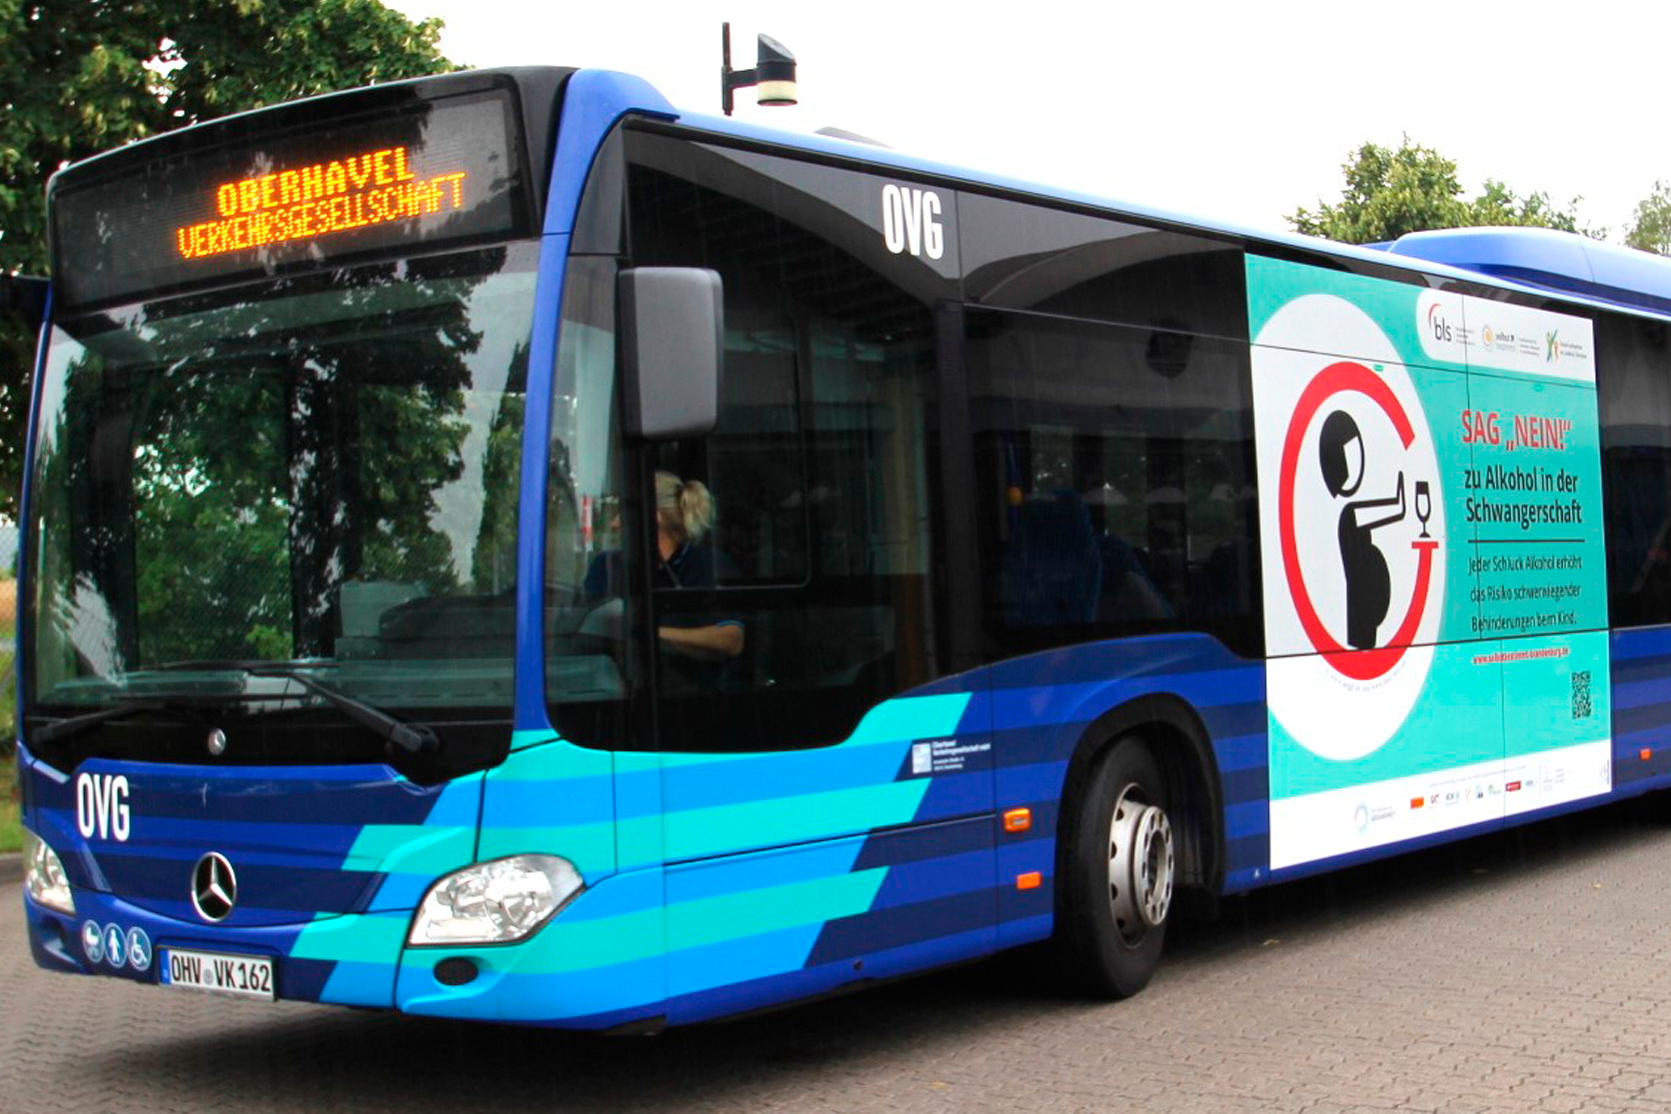 Blauer Bus mit seitlichem Aufdruck "SAG NEIN!"zu Alkohol in der Schwangerschaft